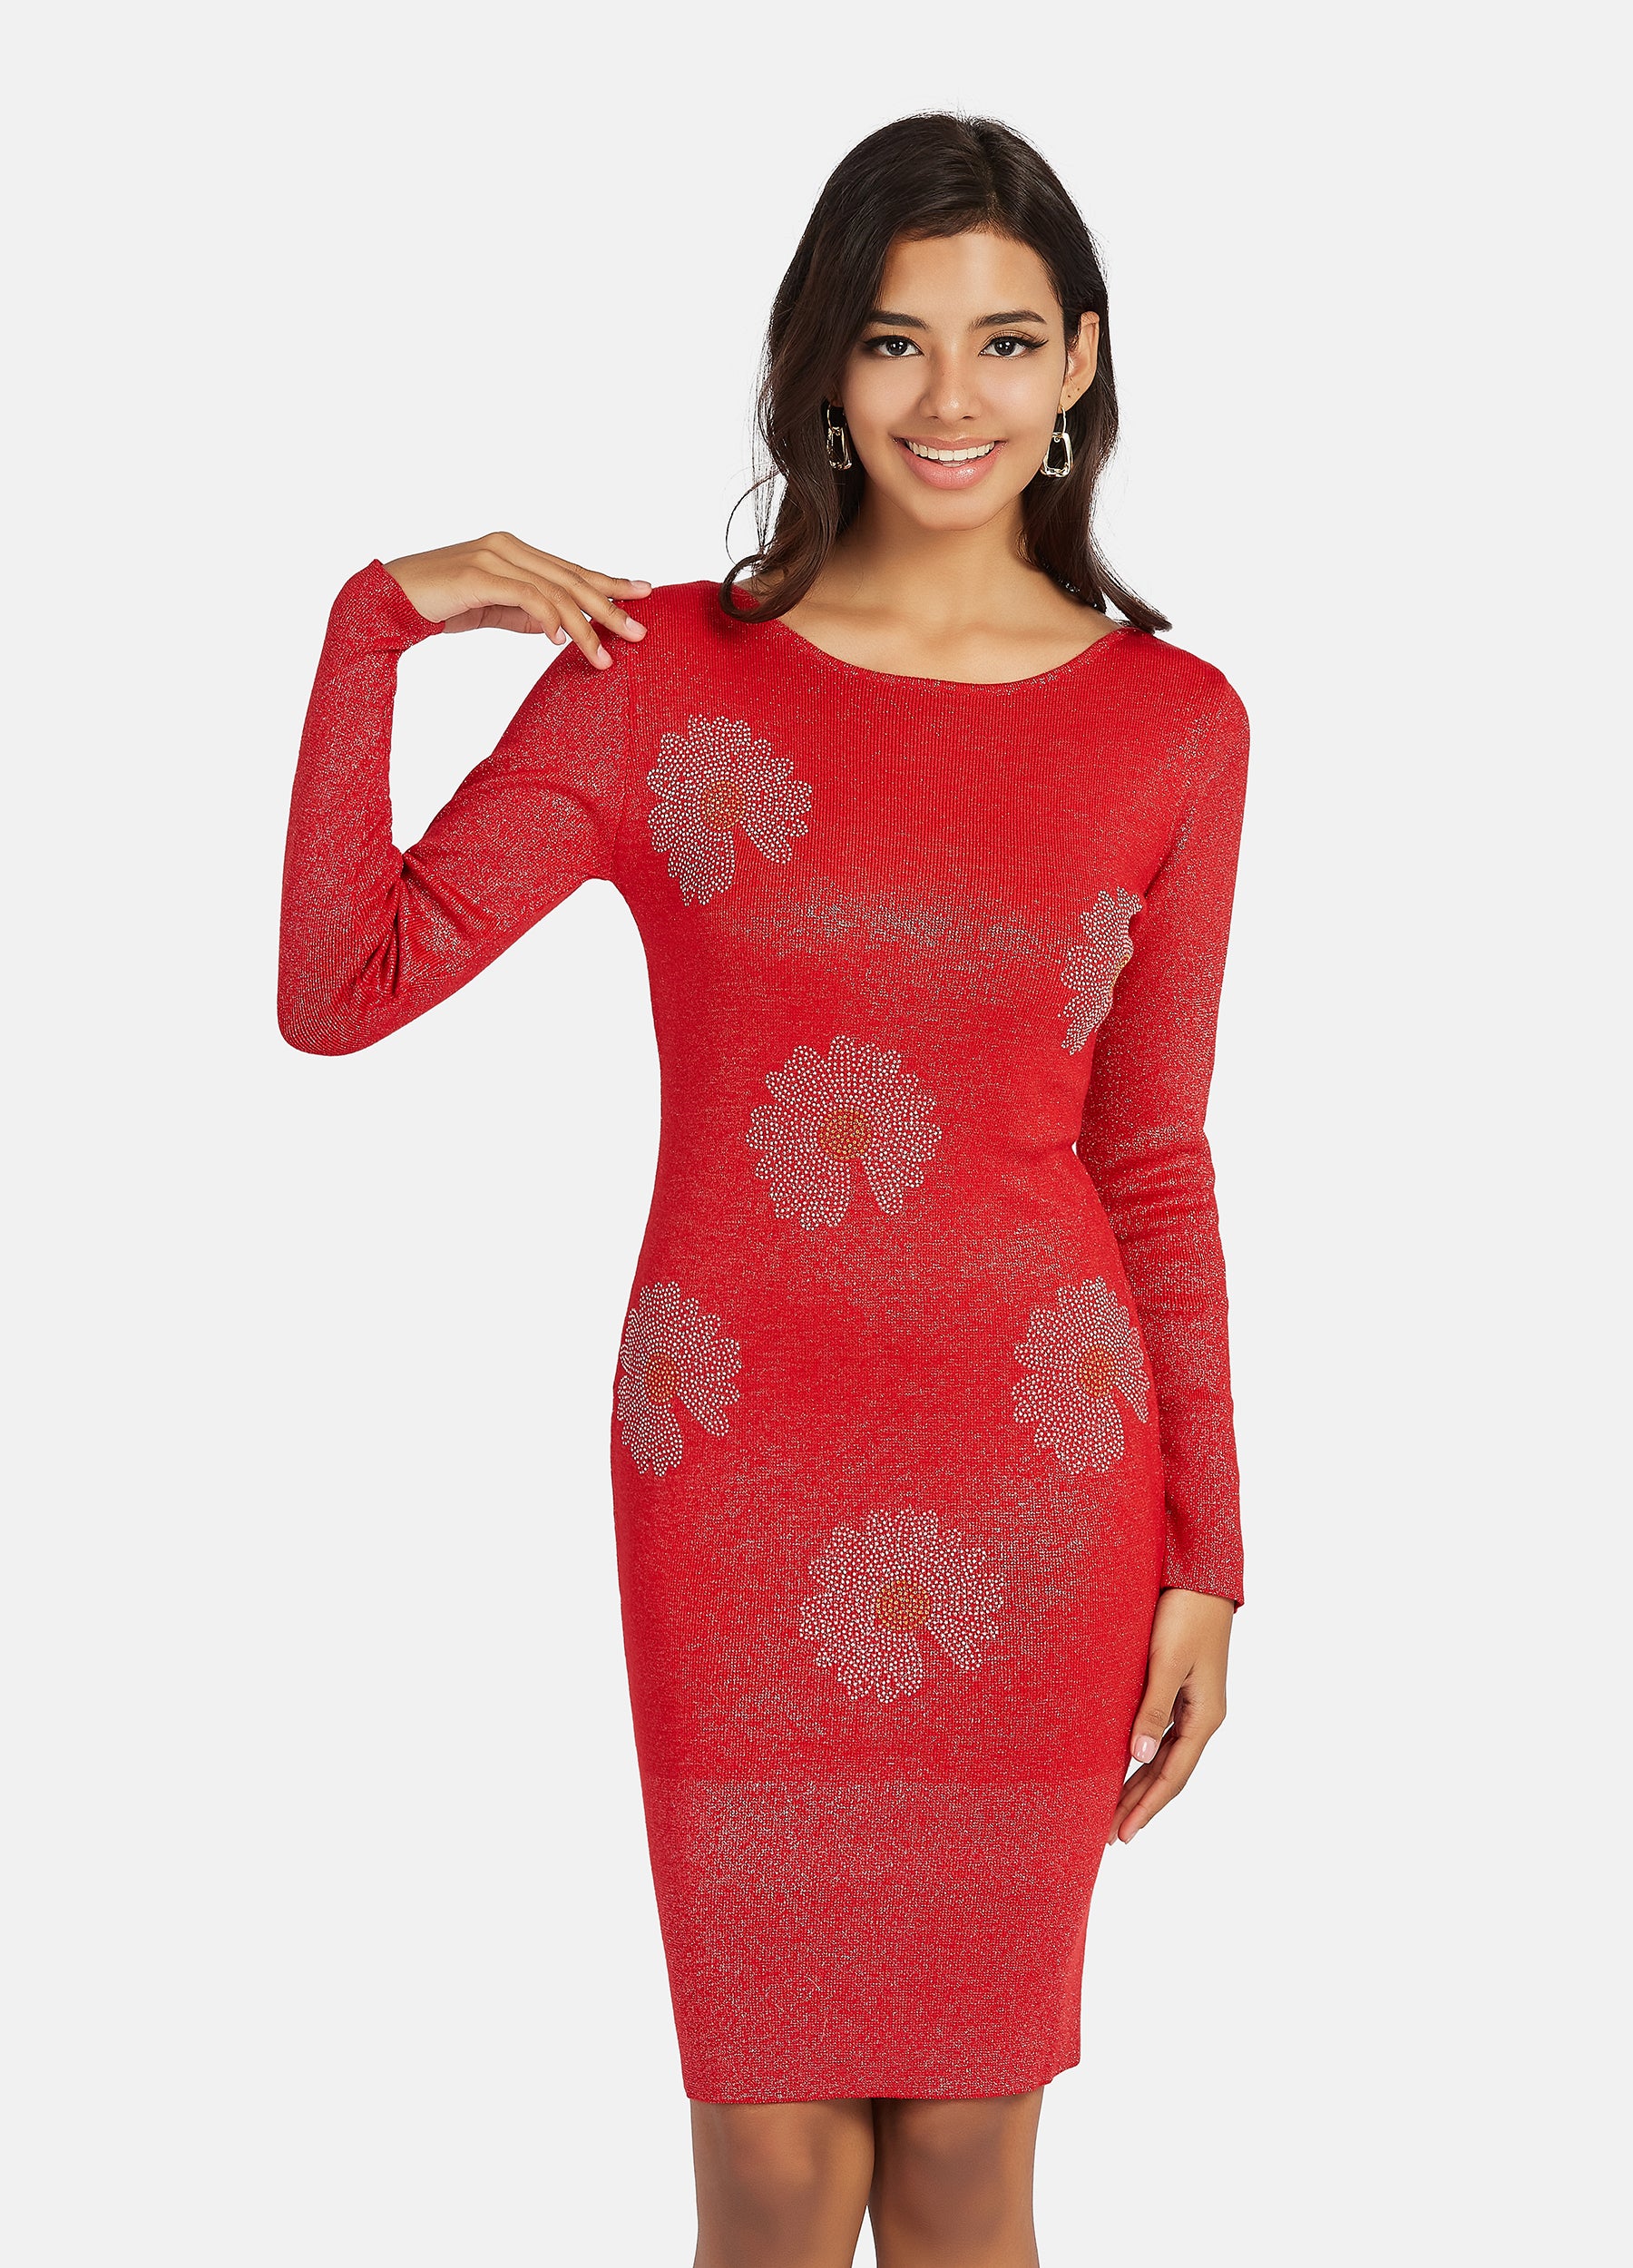 FINEPEEK Women's Fall Red Slim Fit Rib-Knit Sweater Dress  (Clearance)